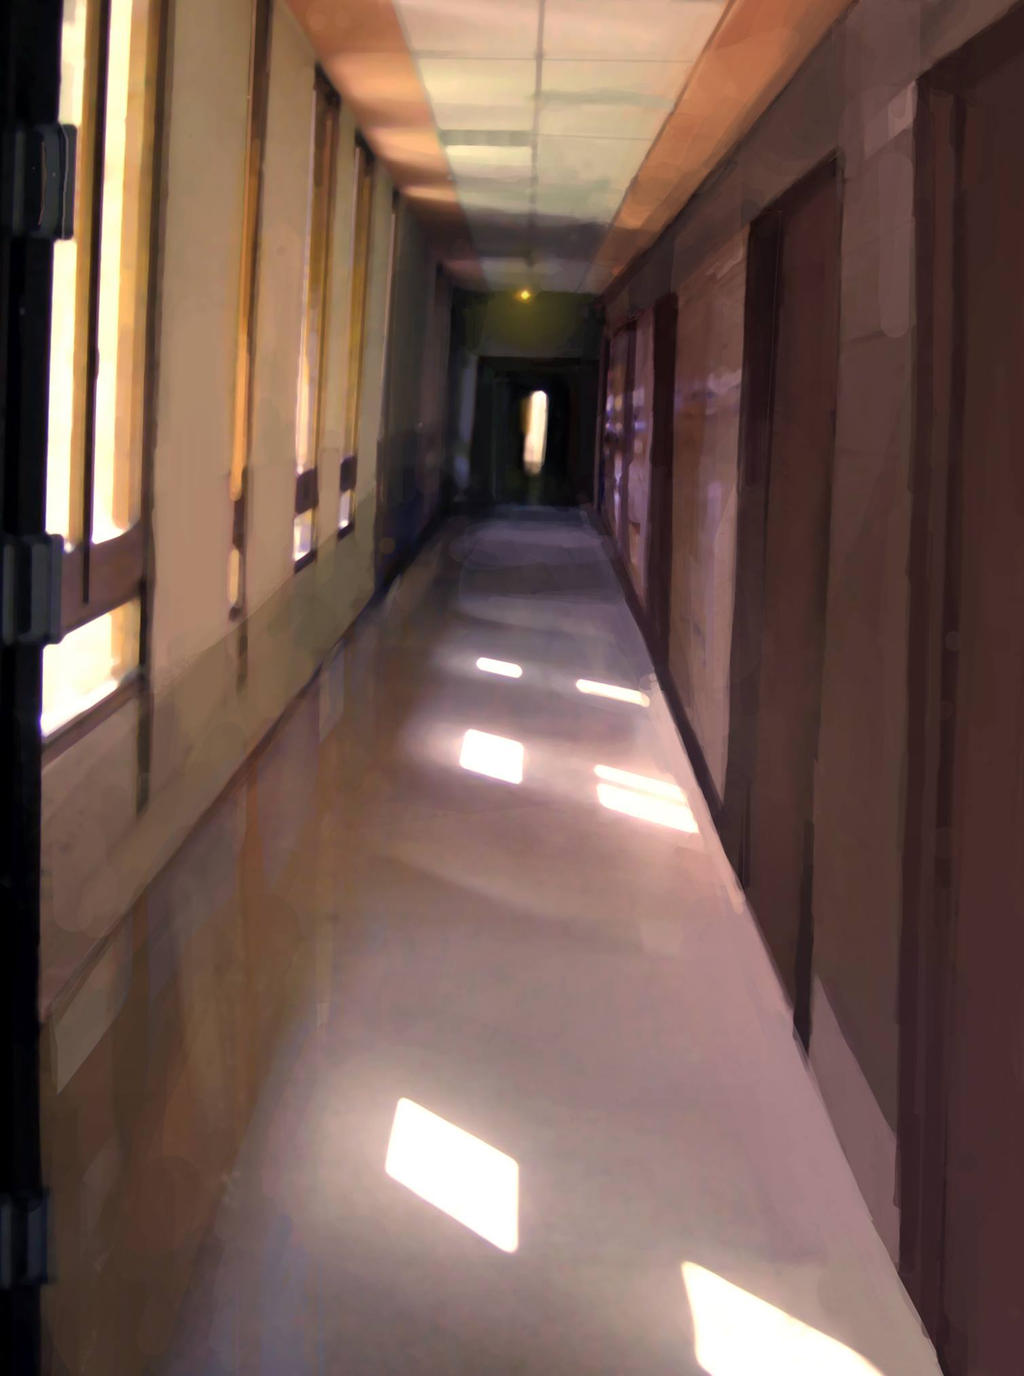 background - school hallway by Pati-Velux on DeviantArt